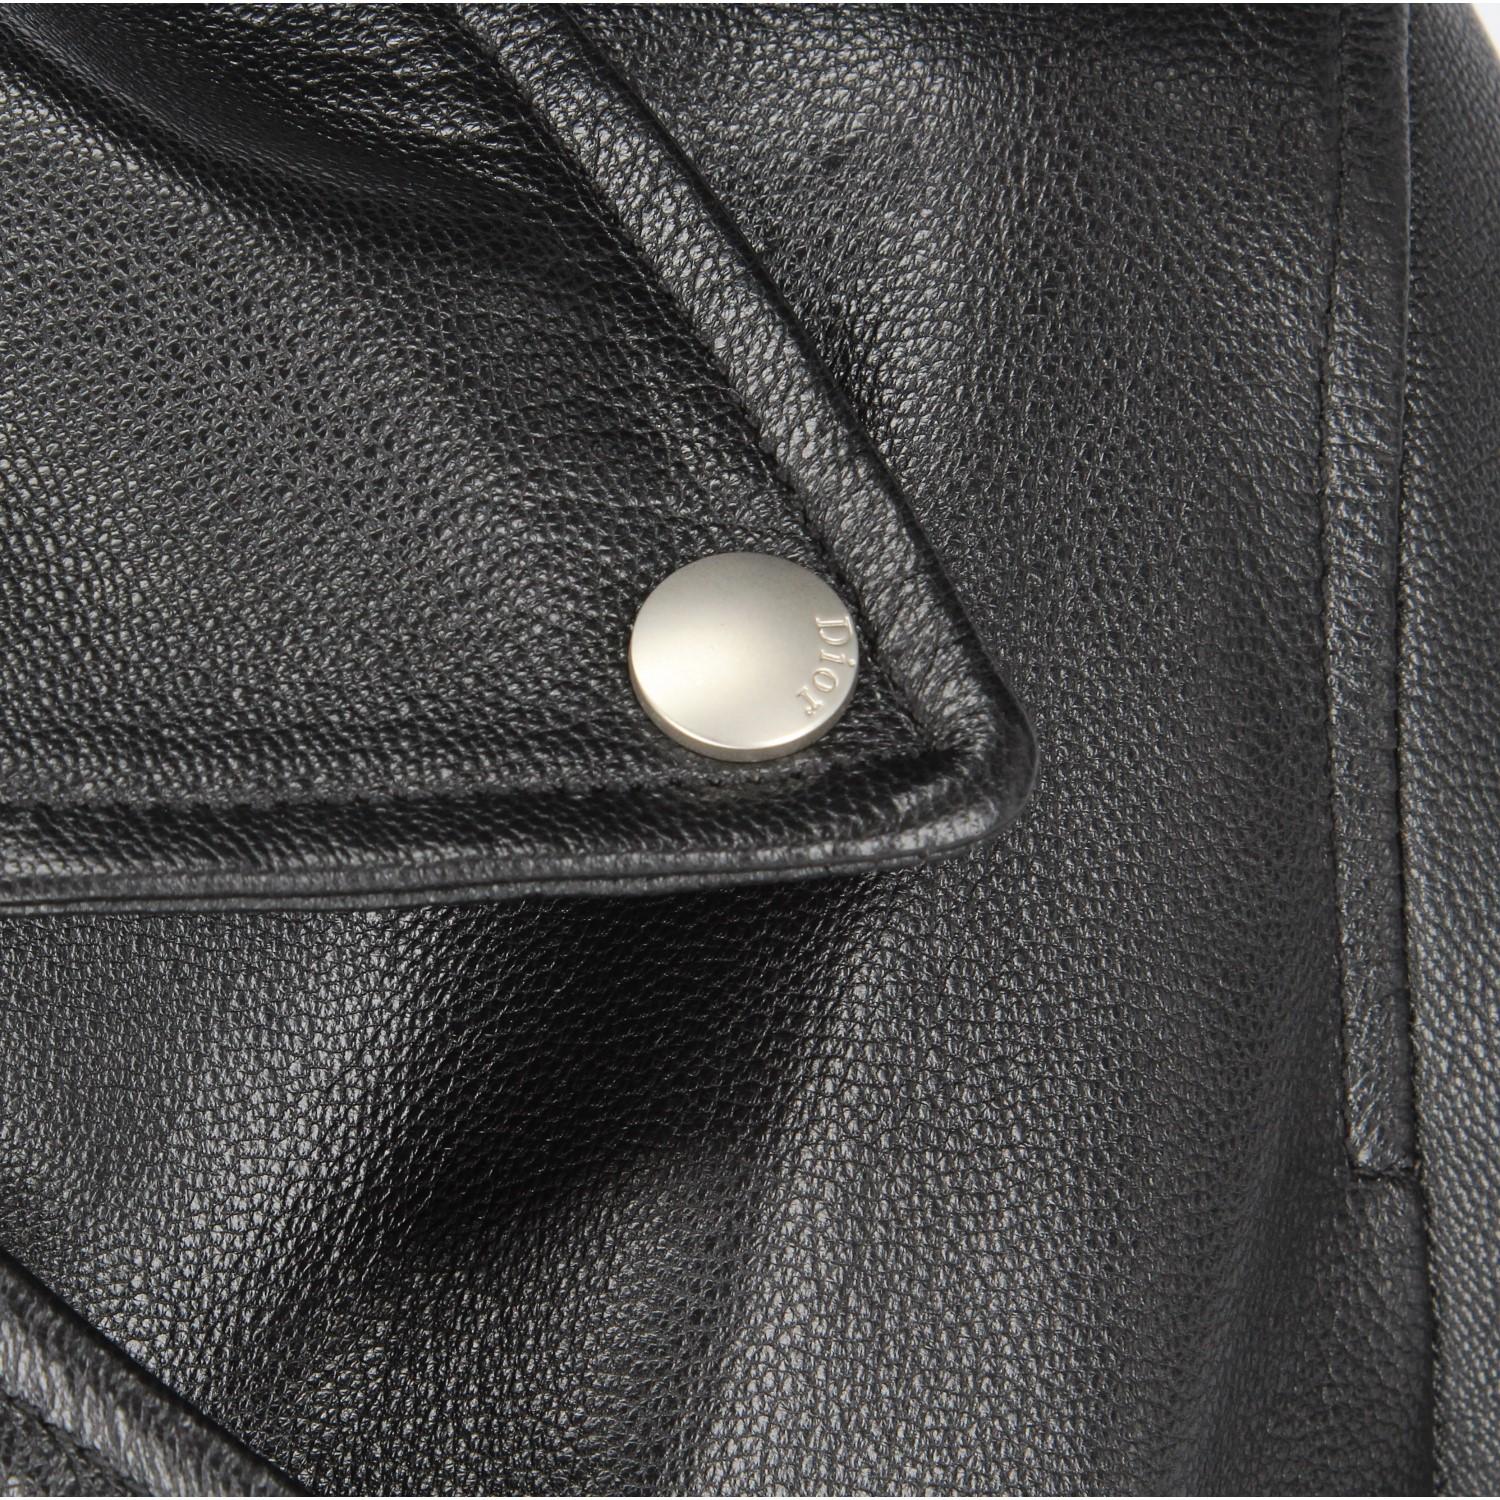 2010s Christian Dior Black Leather Biker Jacket 3